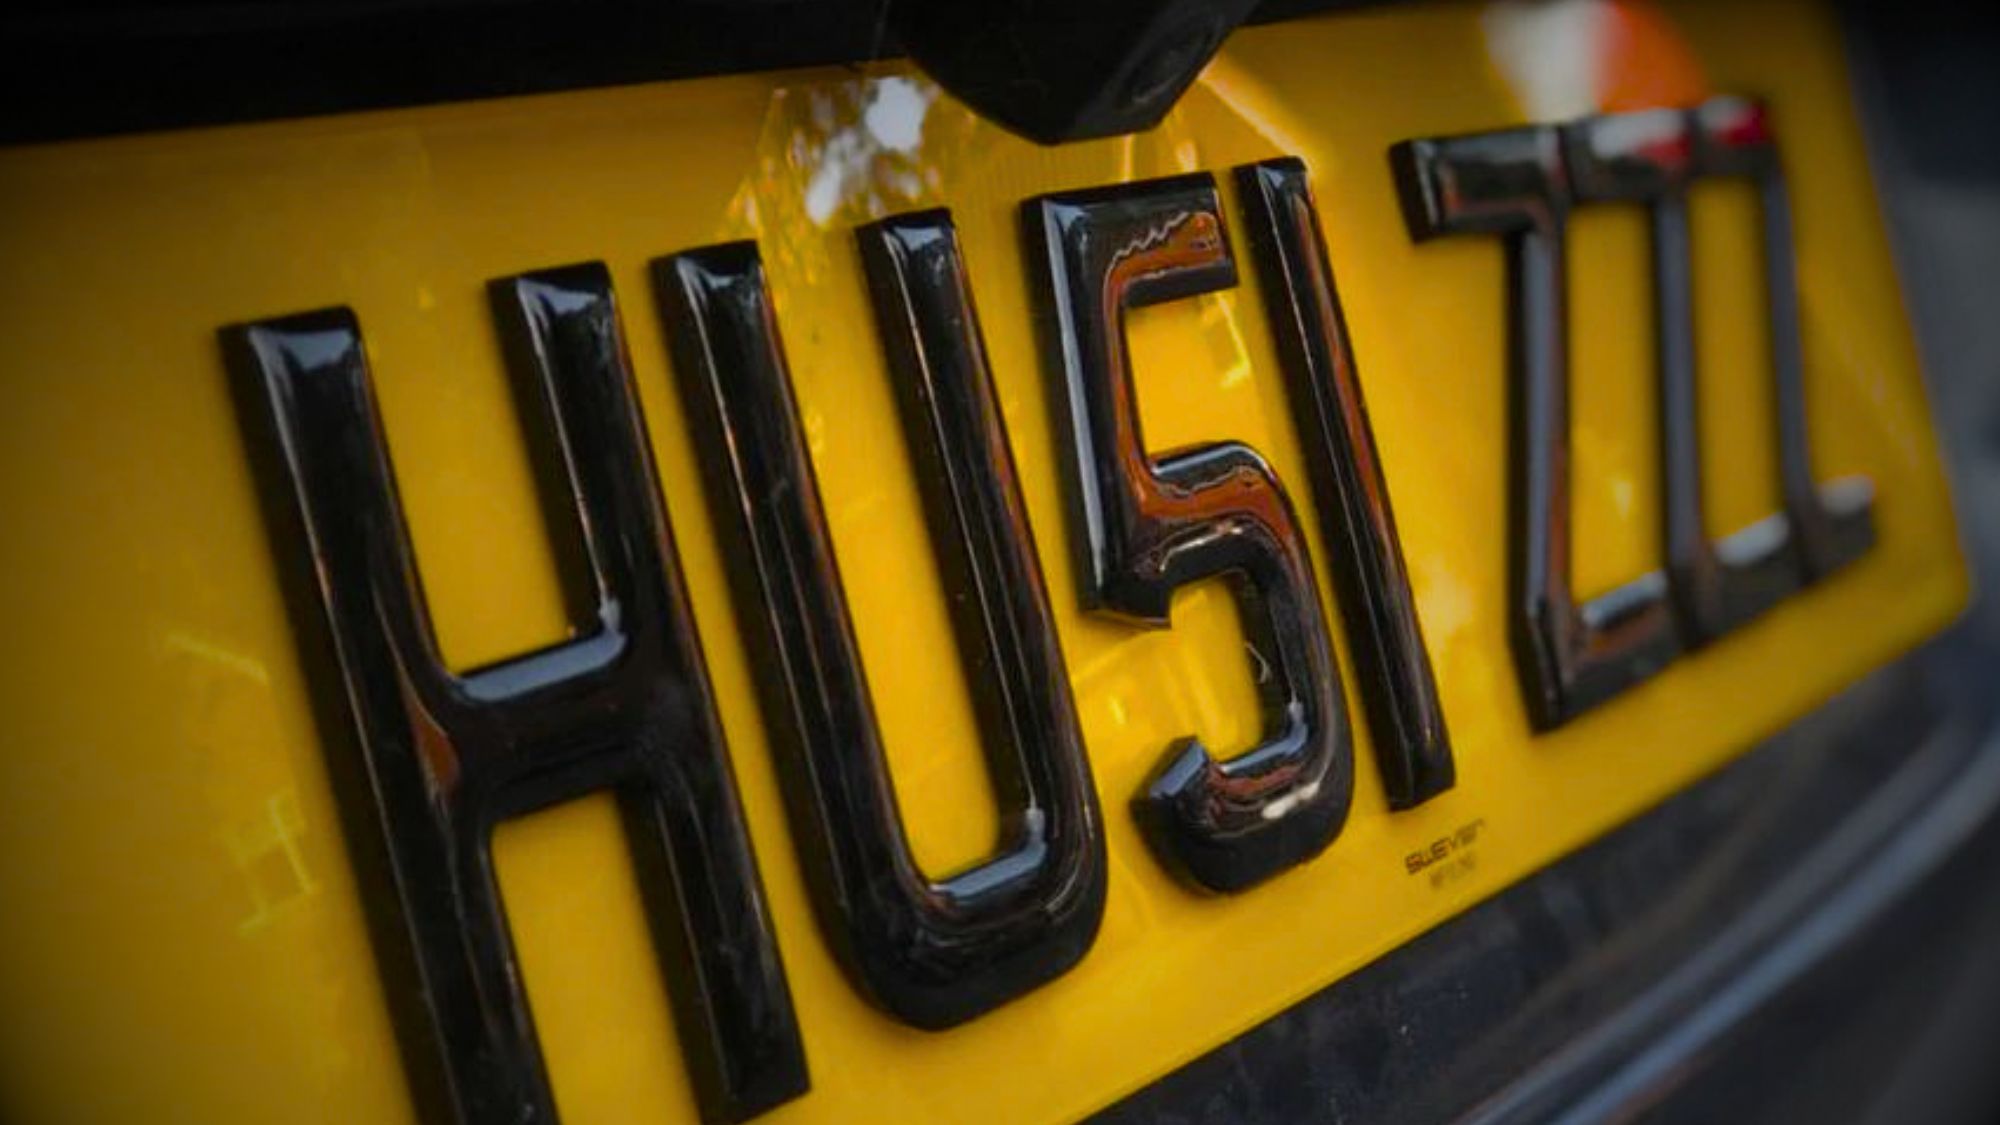 A close-up of the word HU5I ZZZ on a 4D license plates